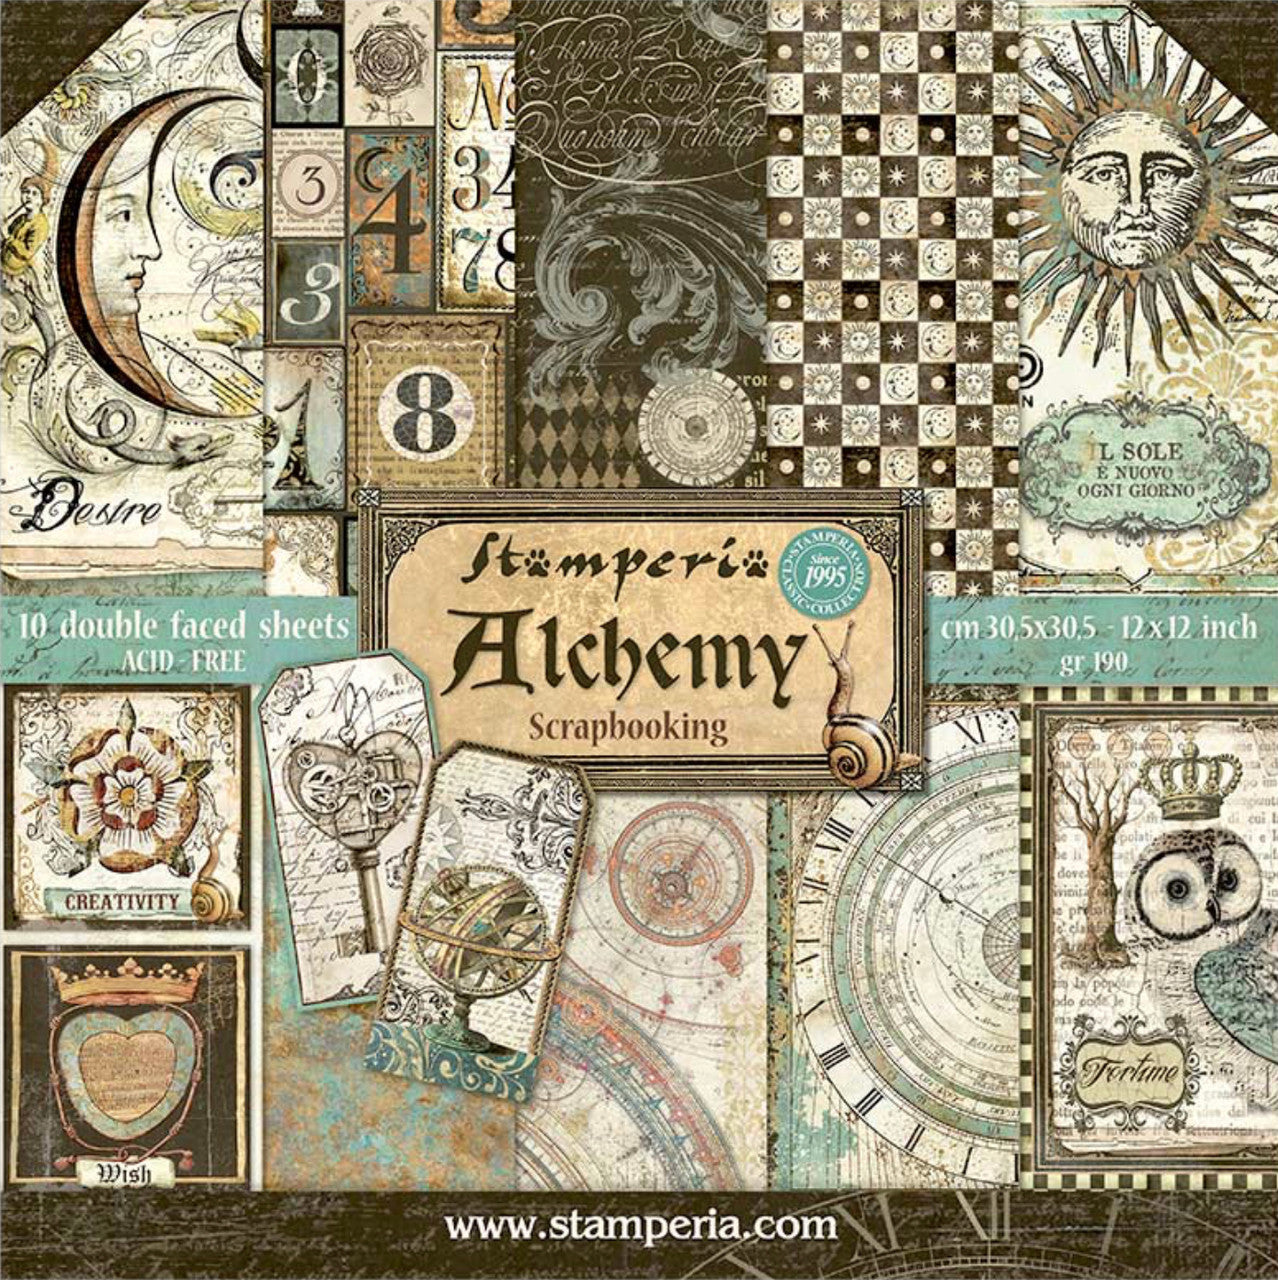 Paquete de papel Stamperia Alchemy 12" x 12"